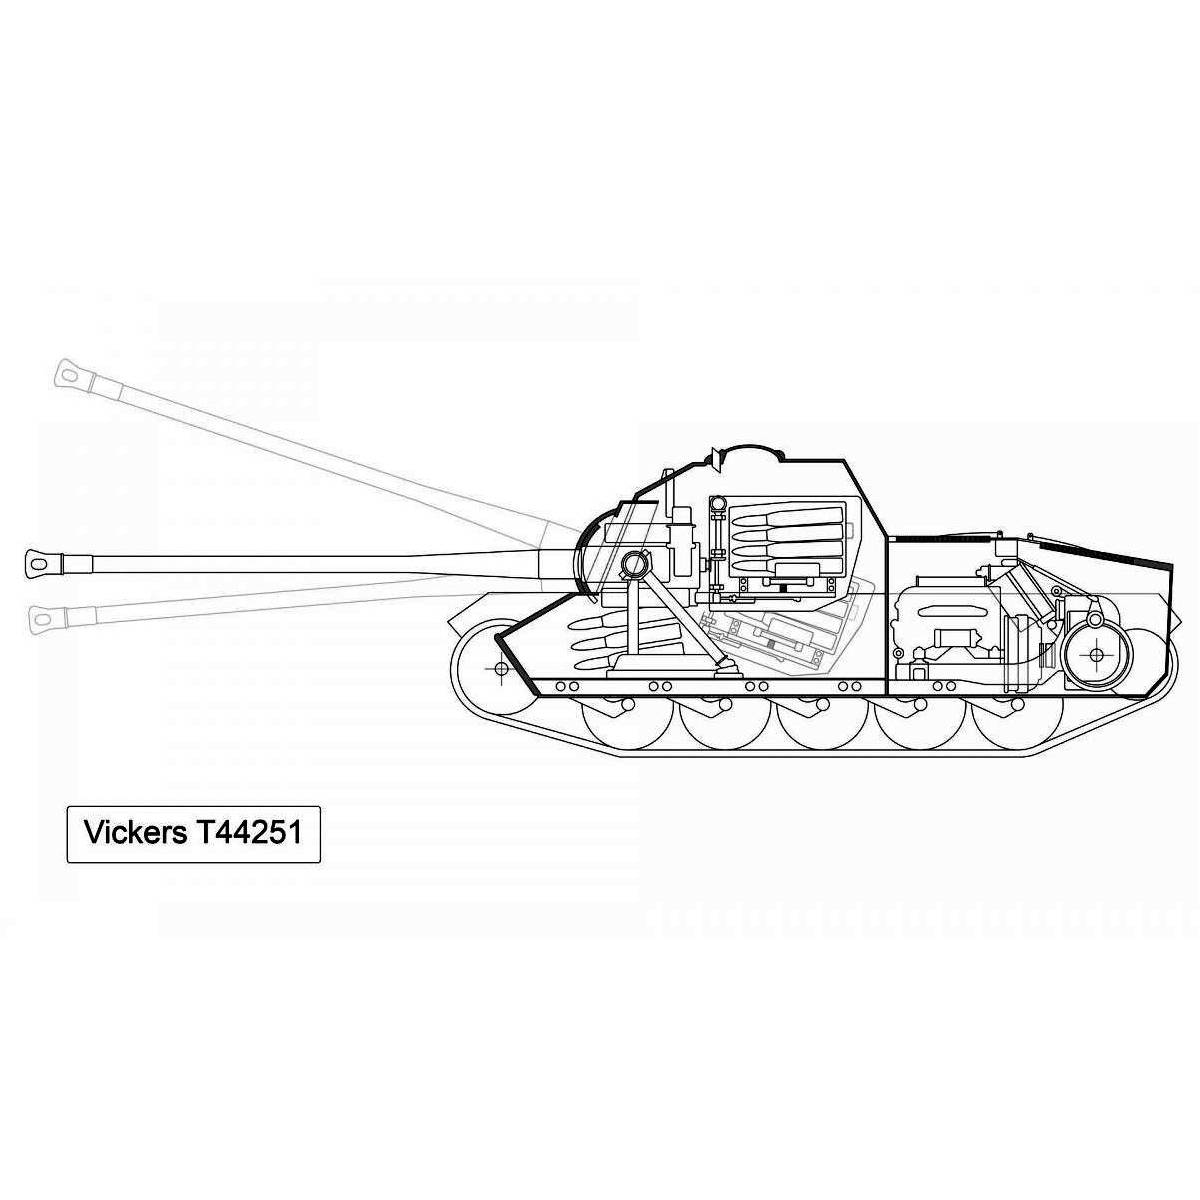 Проект истребителя танков Vickers SP.4. Великобритания